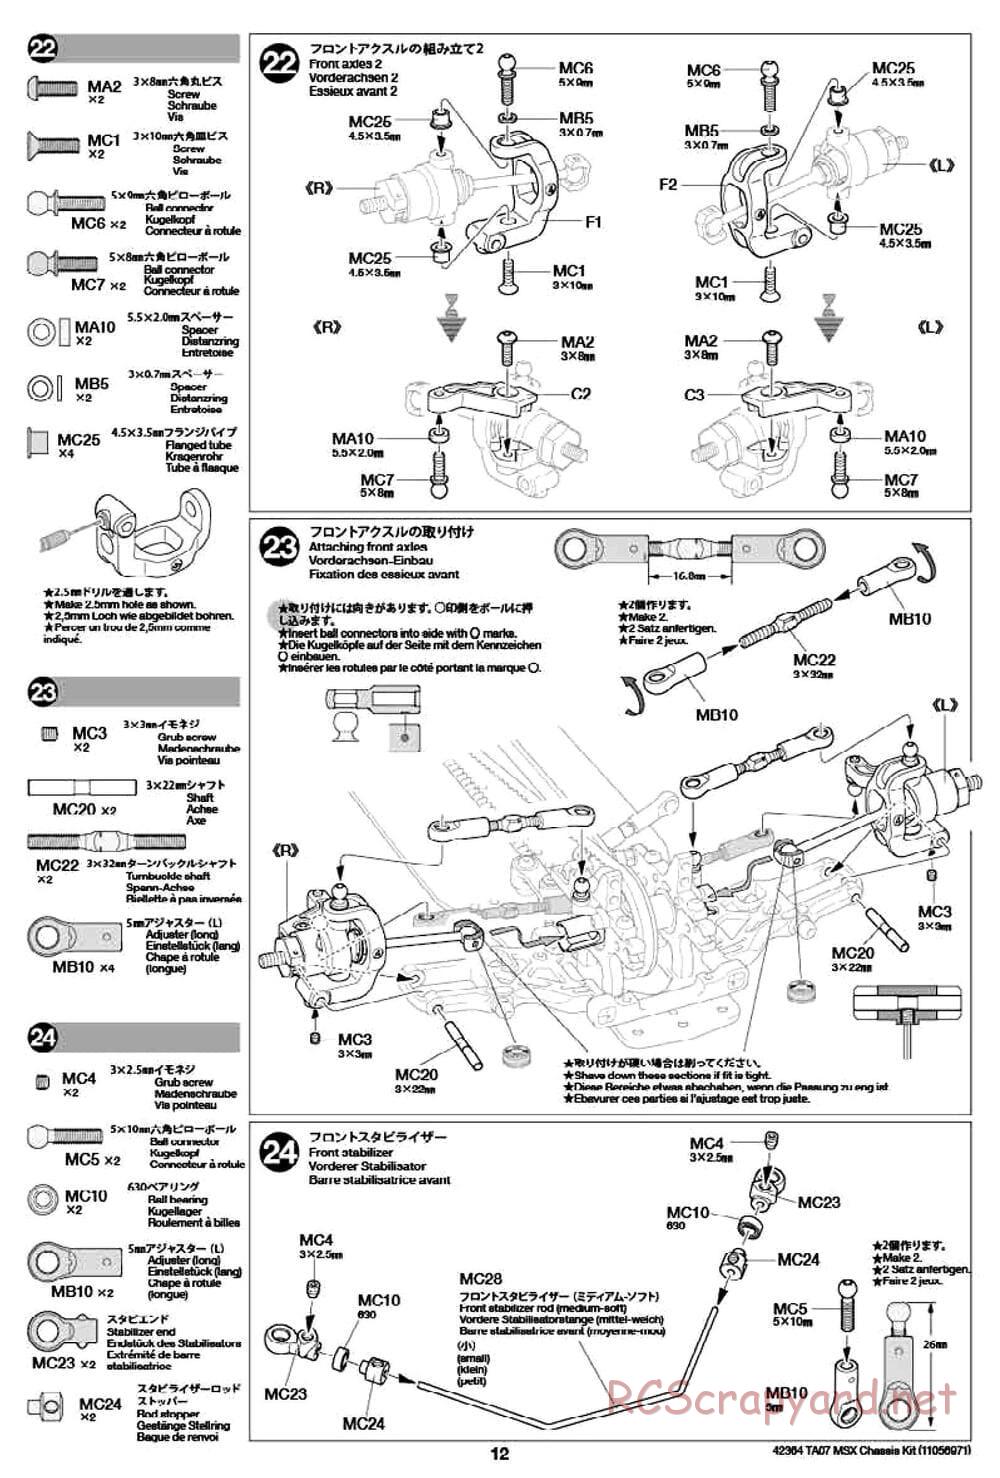 Tamiya - TA07 MSX Chassis - Manual - Page 12